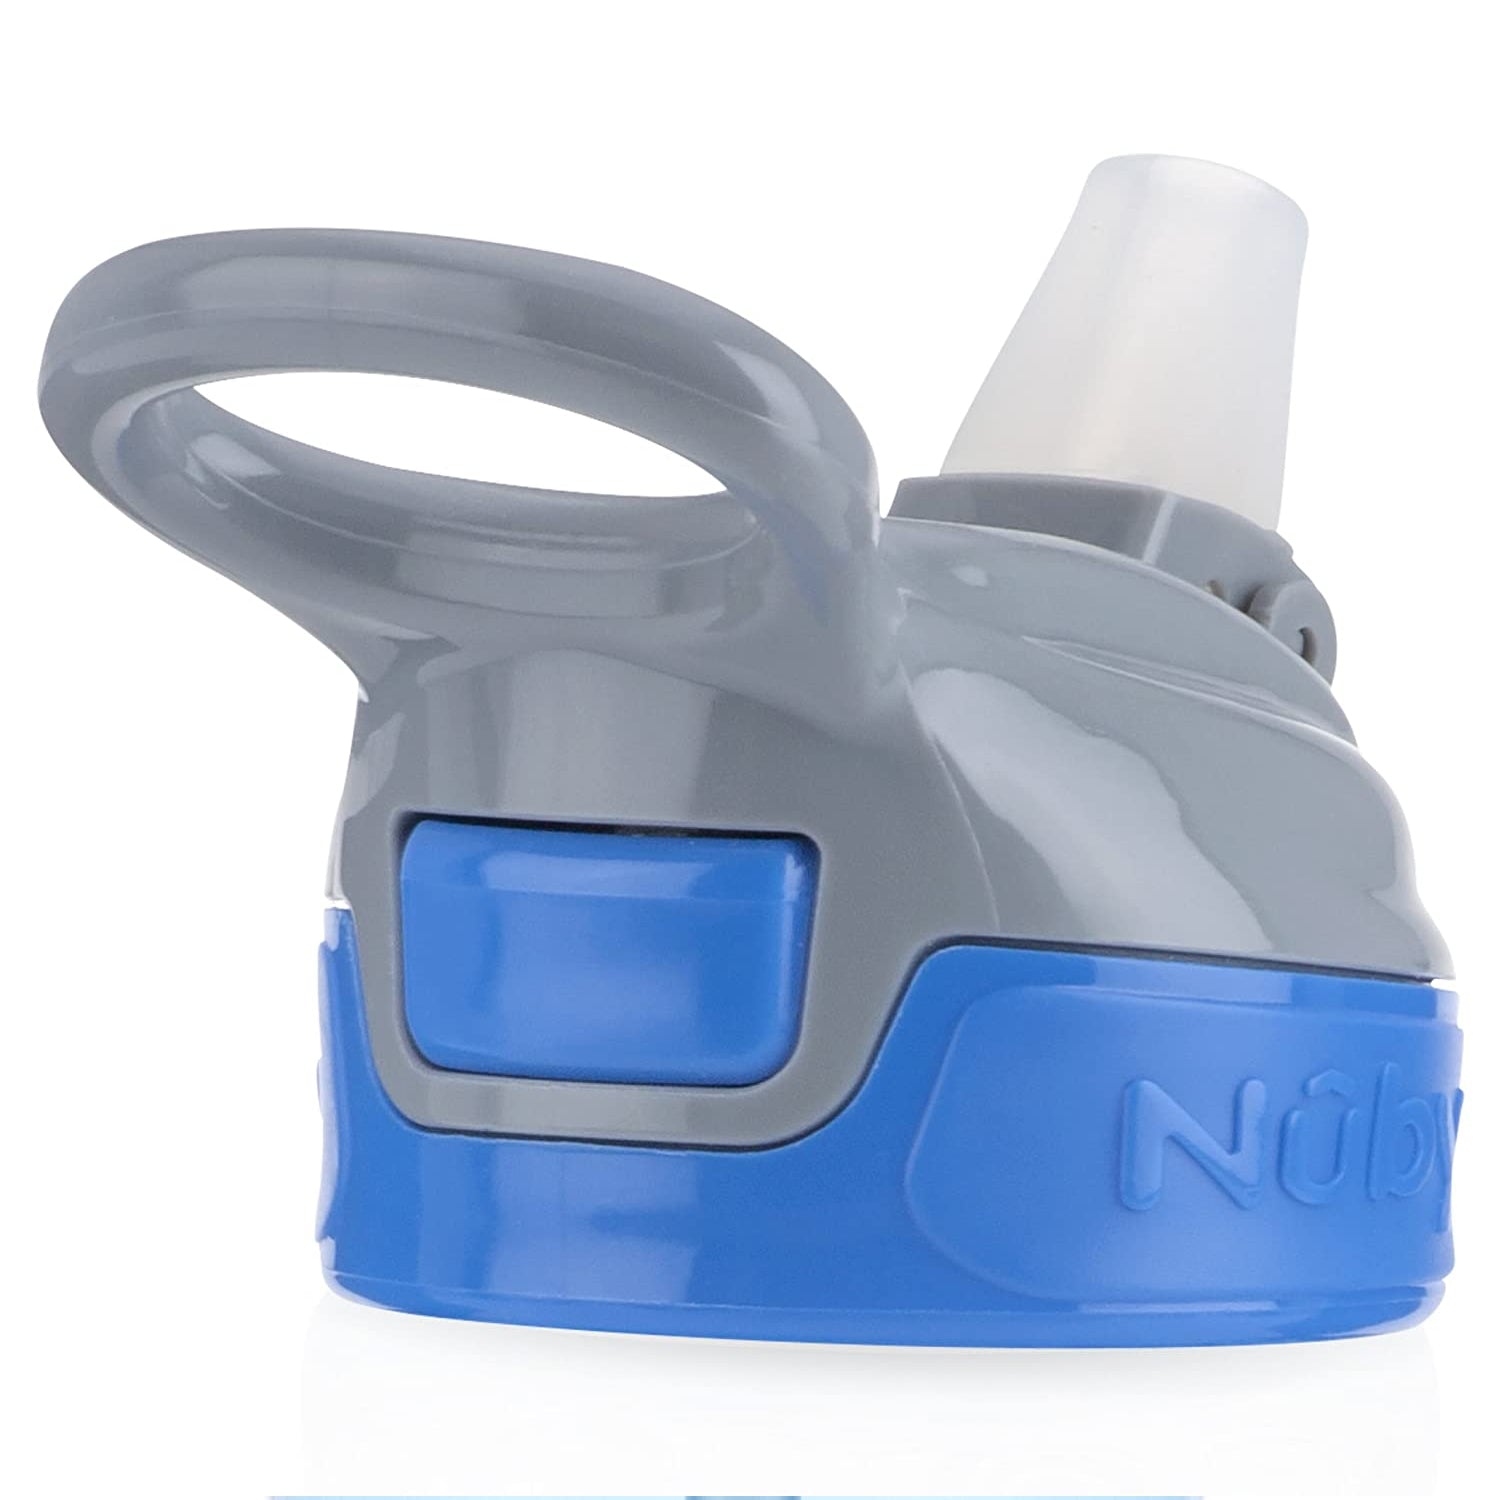 Nuby Flip-it Soft Spout Water Bottle, Blue Sharks, 12 oz